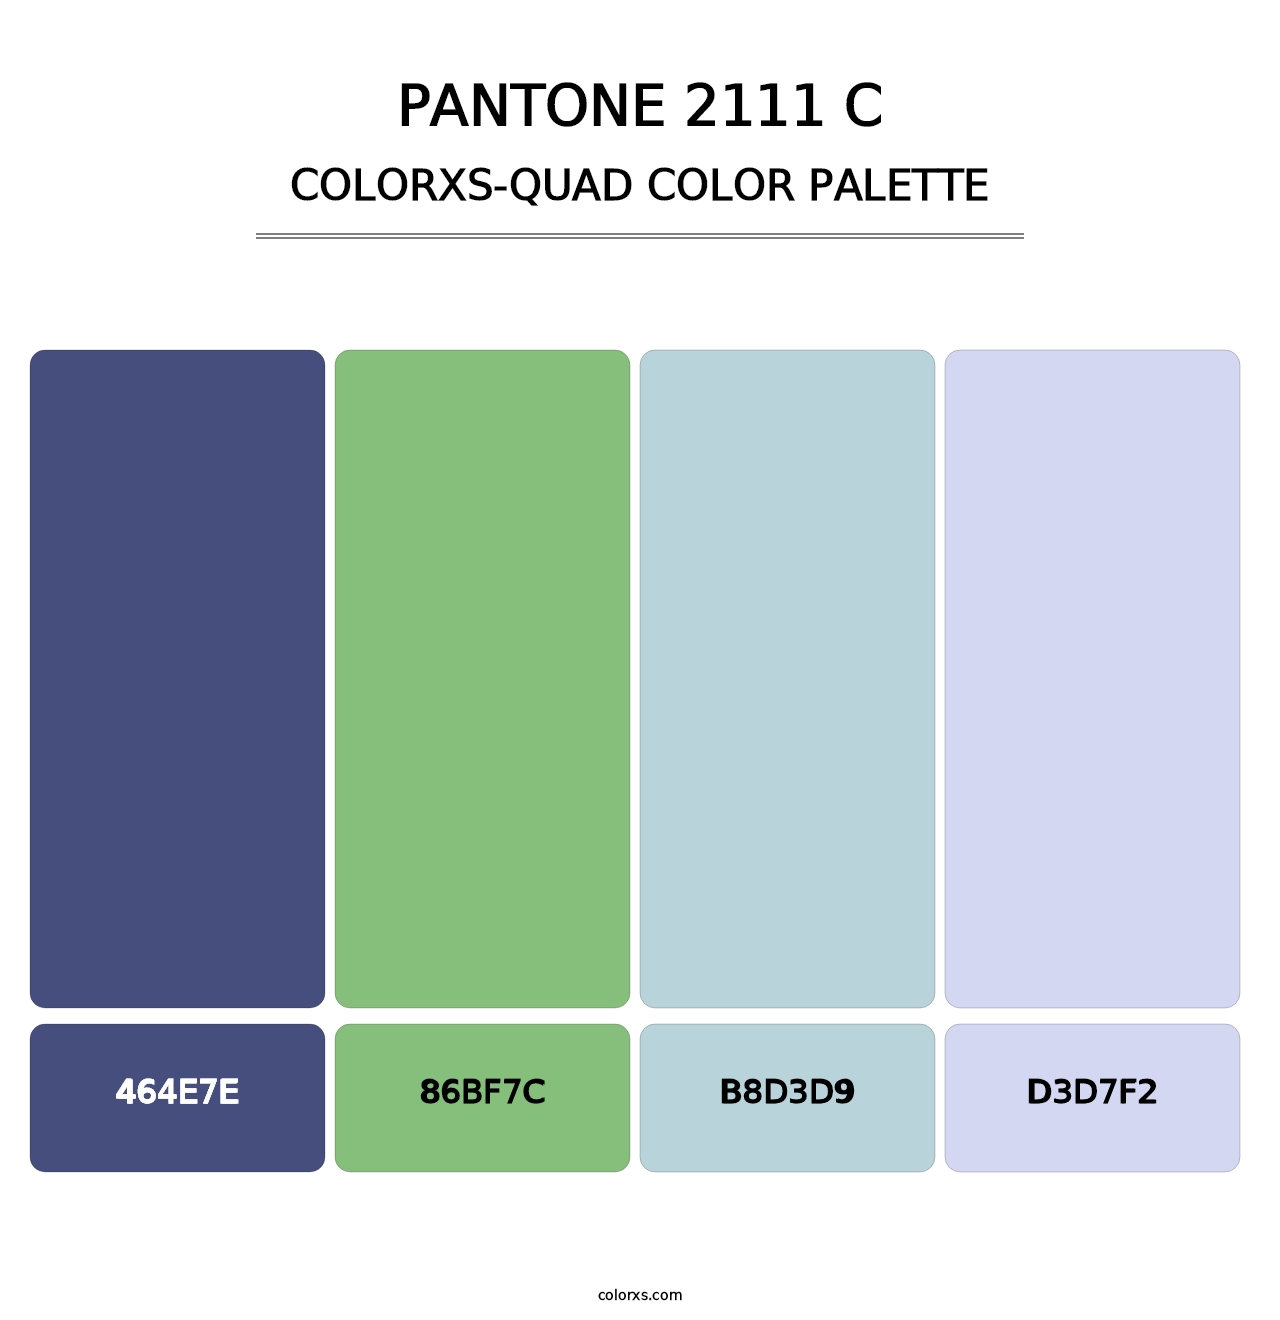 PANTONE 2111 C - Colorxs Quad Palette